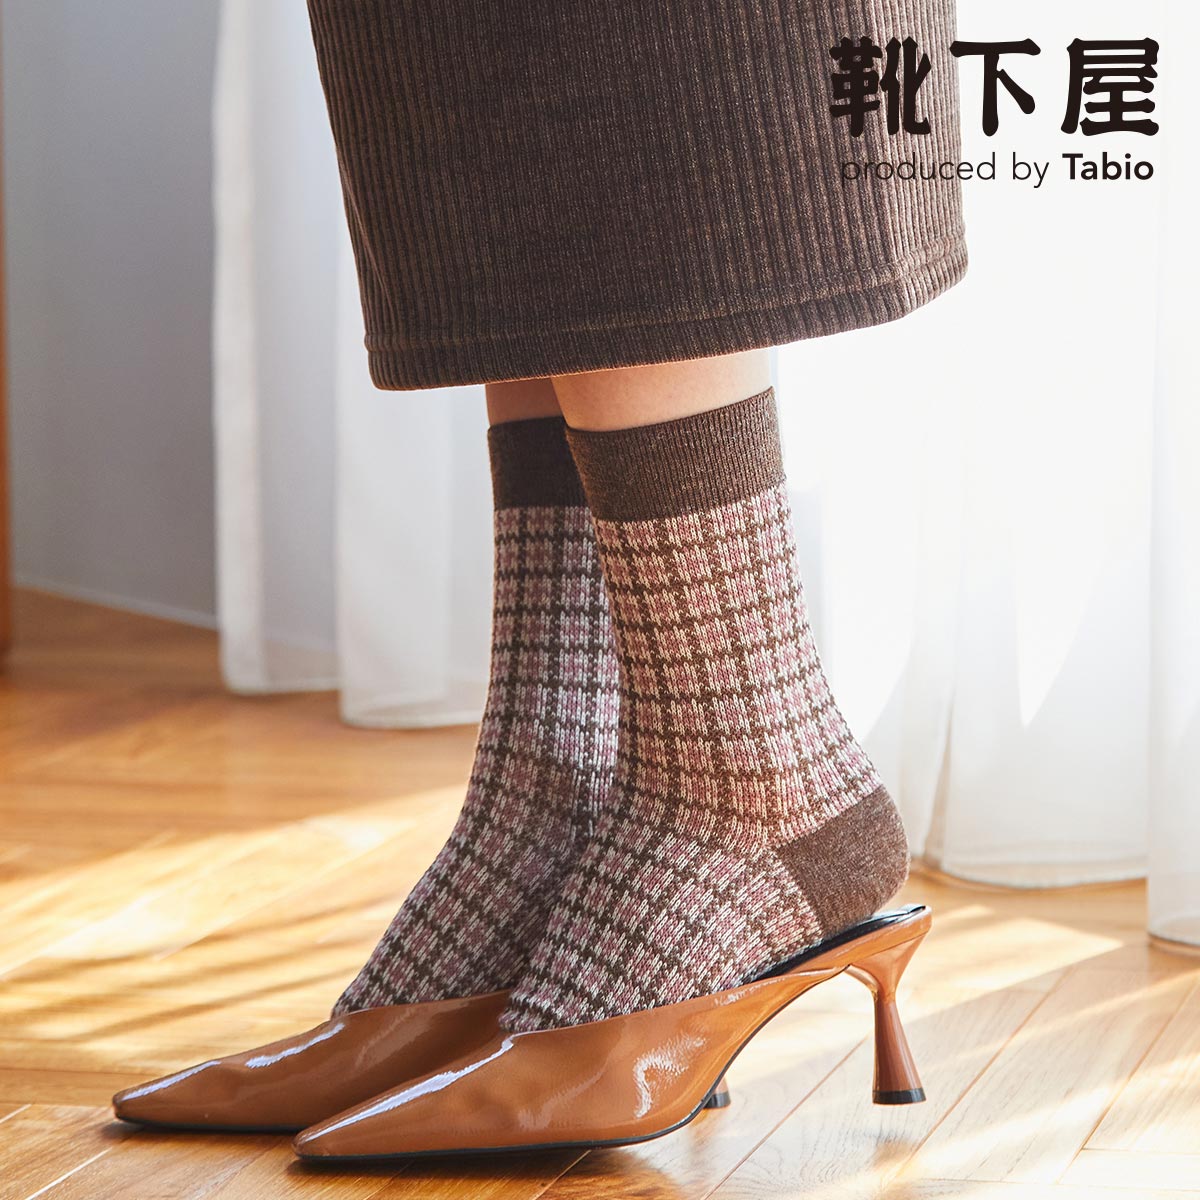 【靴下屋Tabio】女性秋冬中筒襪千鳥格紋系列 日本製【秀太郎屋】